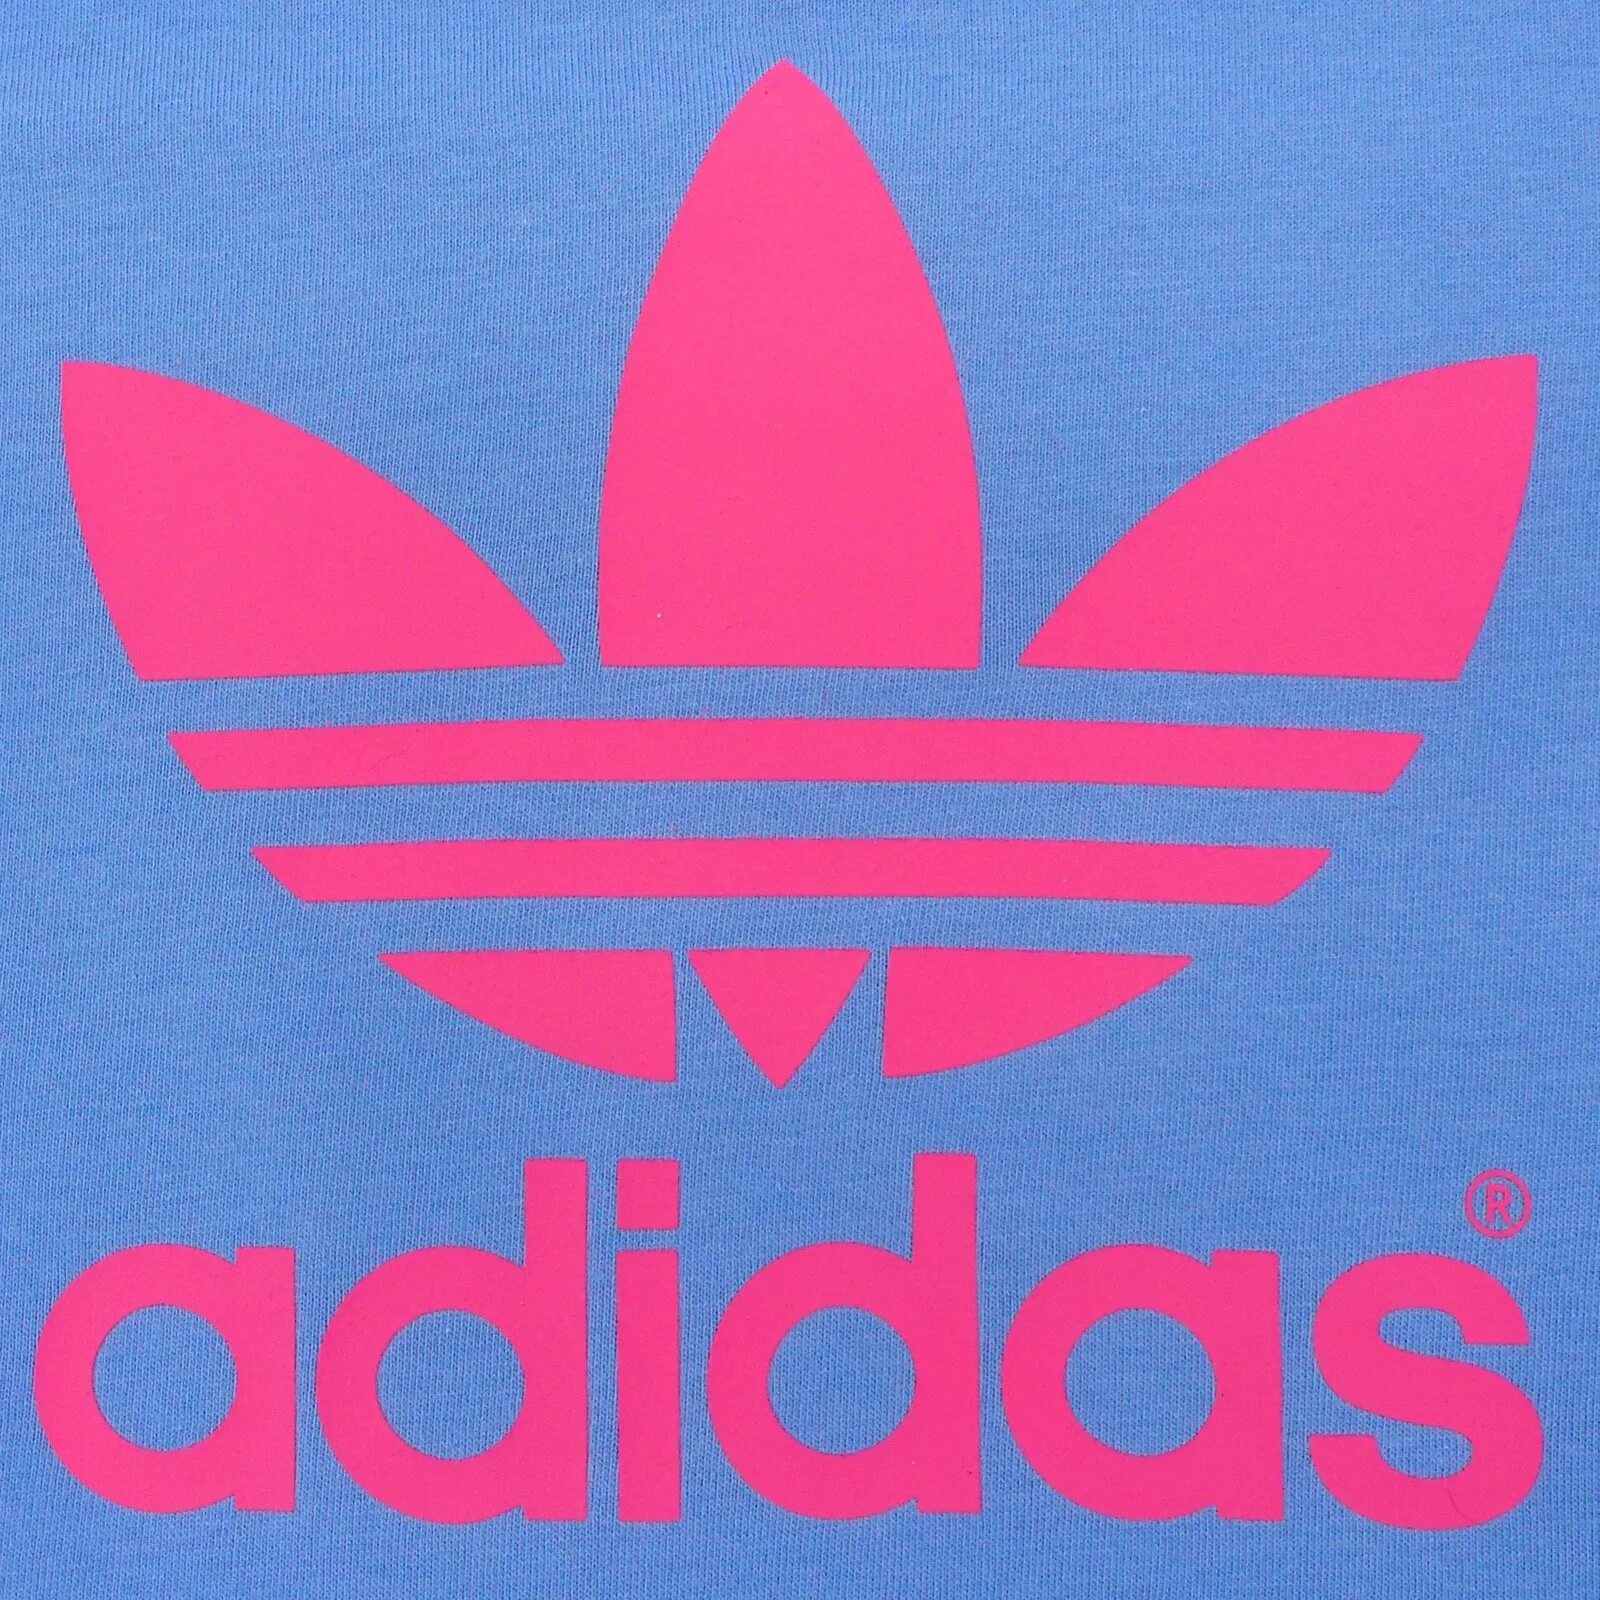 Адидас с цветами. Адидас Ориджиналс лого. Adidas Pink Rosa. Надпись адидас. Адидас логотип розовый.